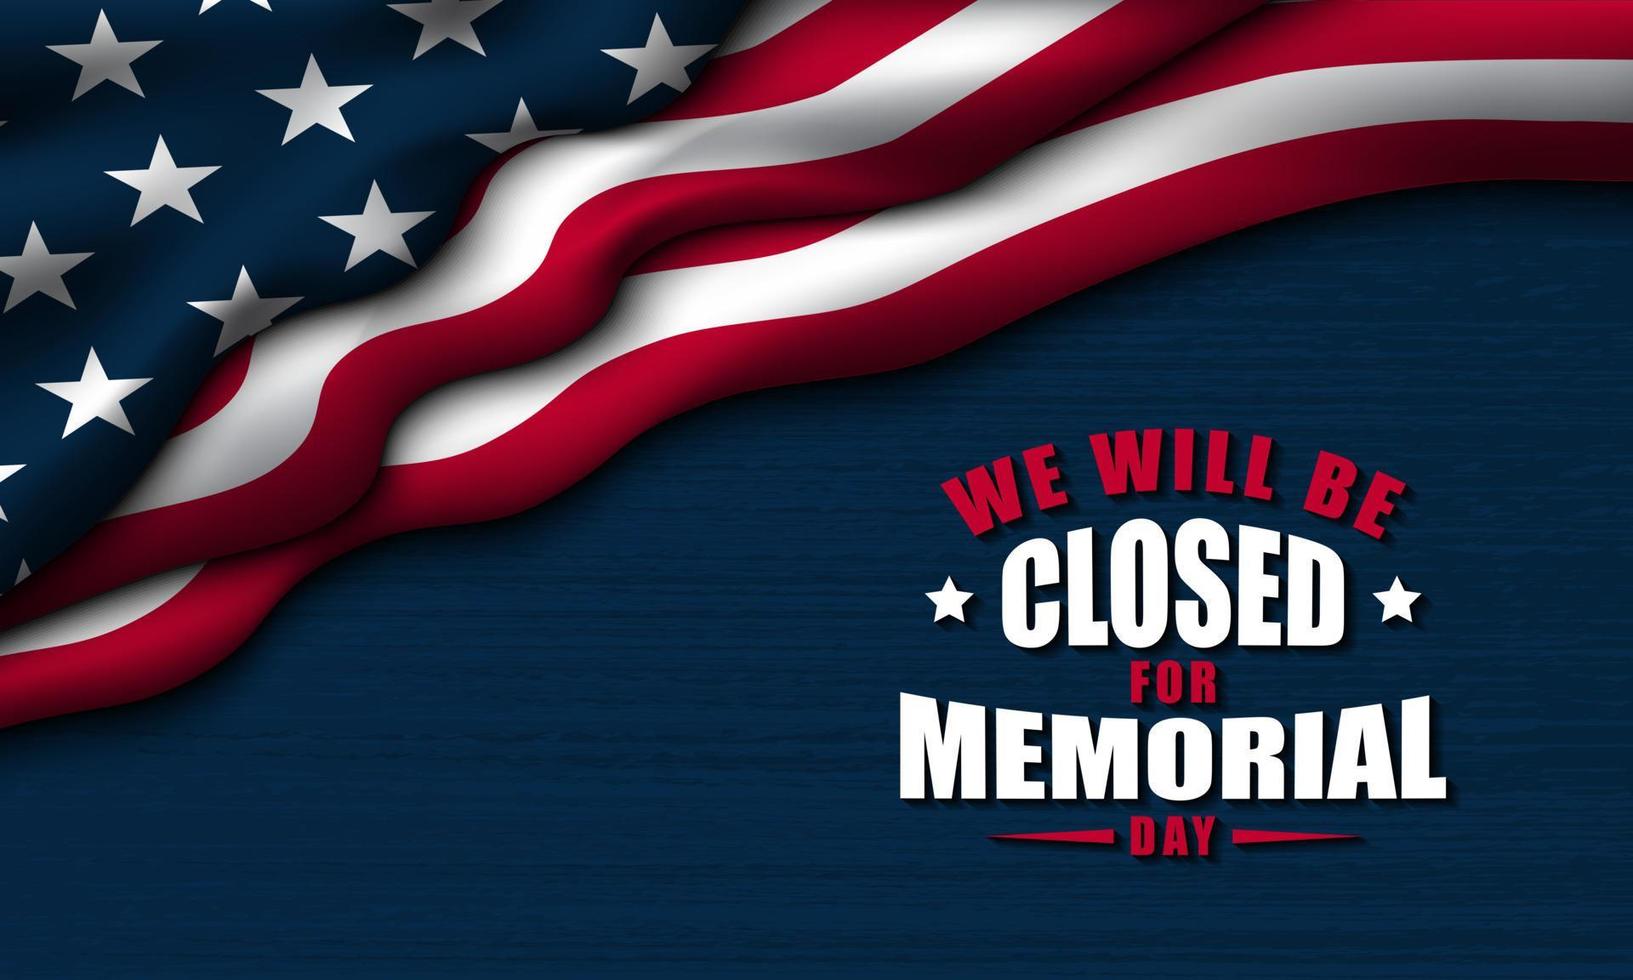 projeto de plano de fundo do dia do memorial. estaremos fechados para o dia do memorial. vetor